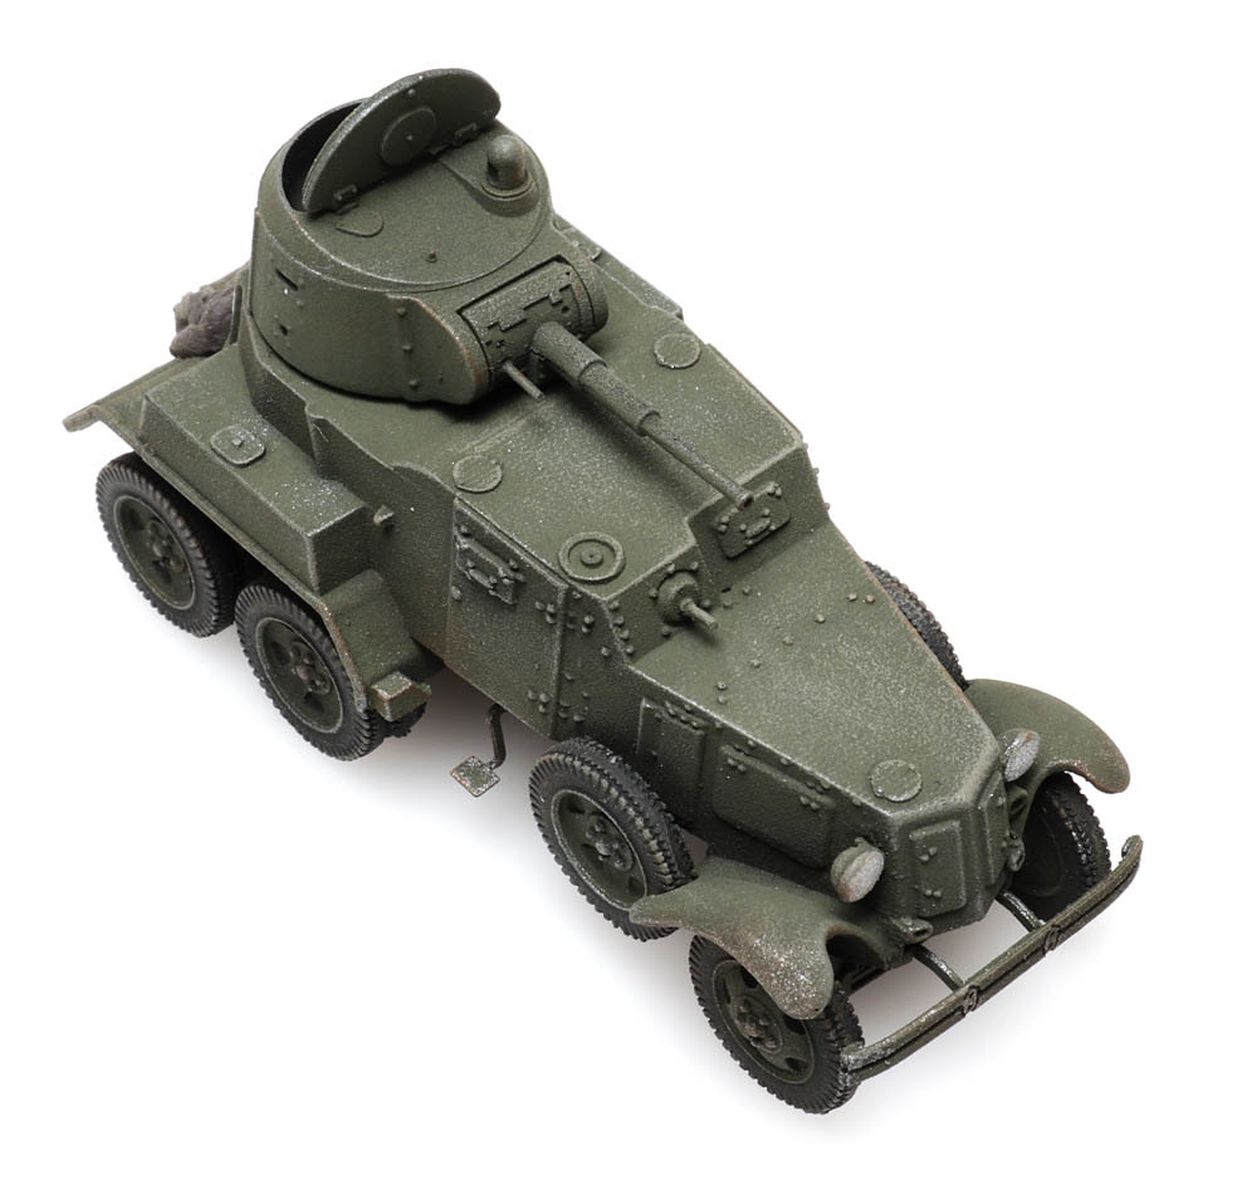 Artitec 6870344 - Panzer BA 10 USSR